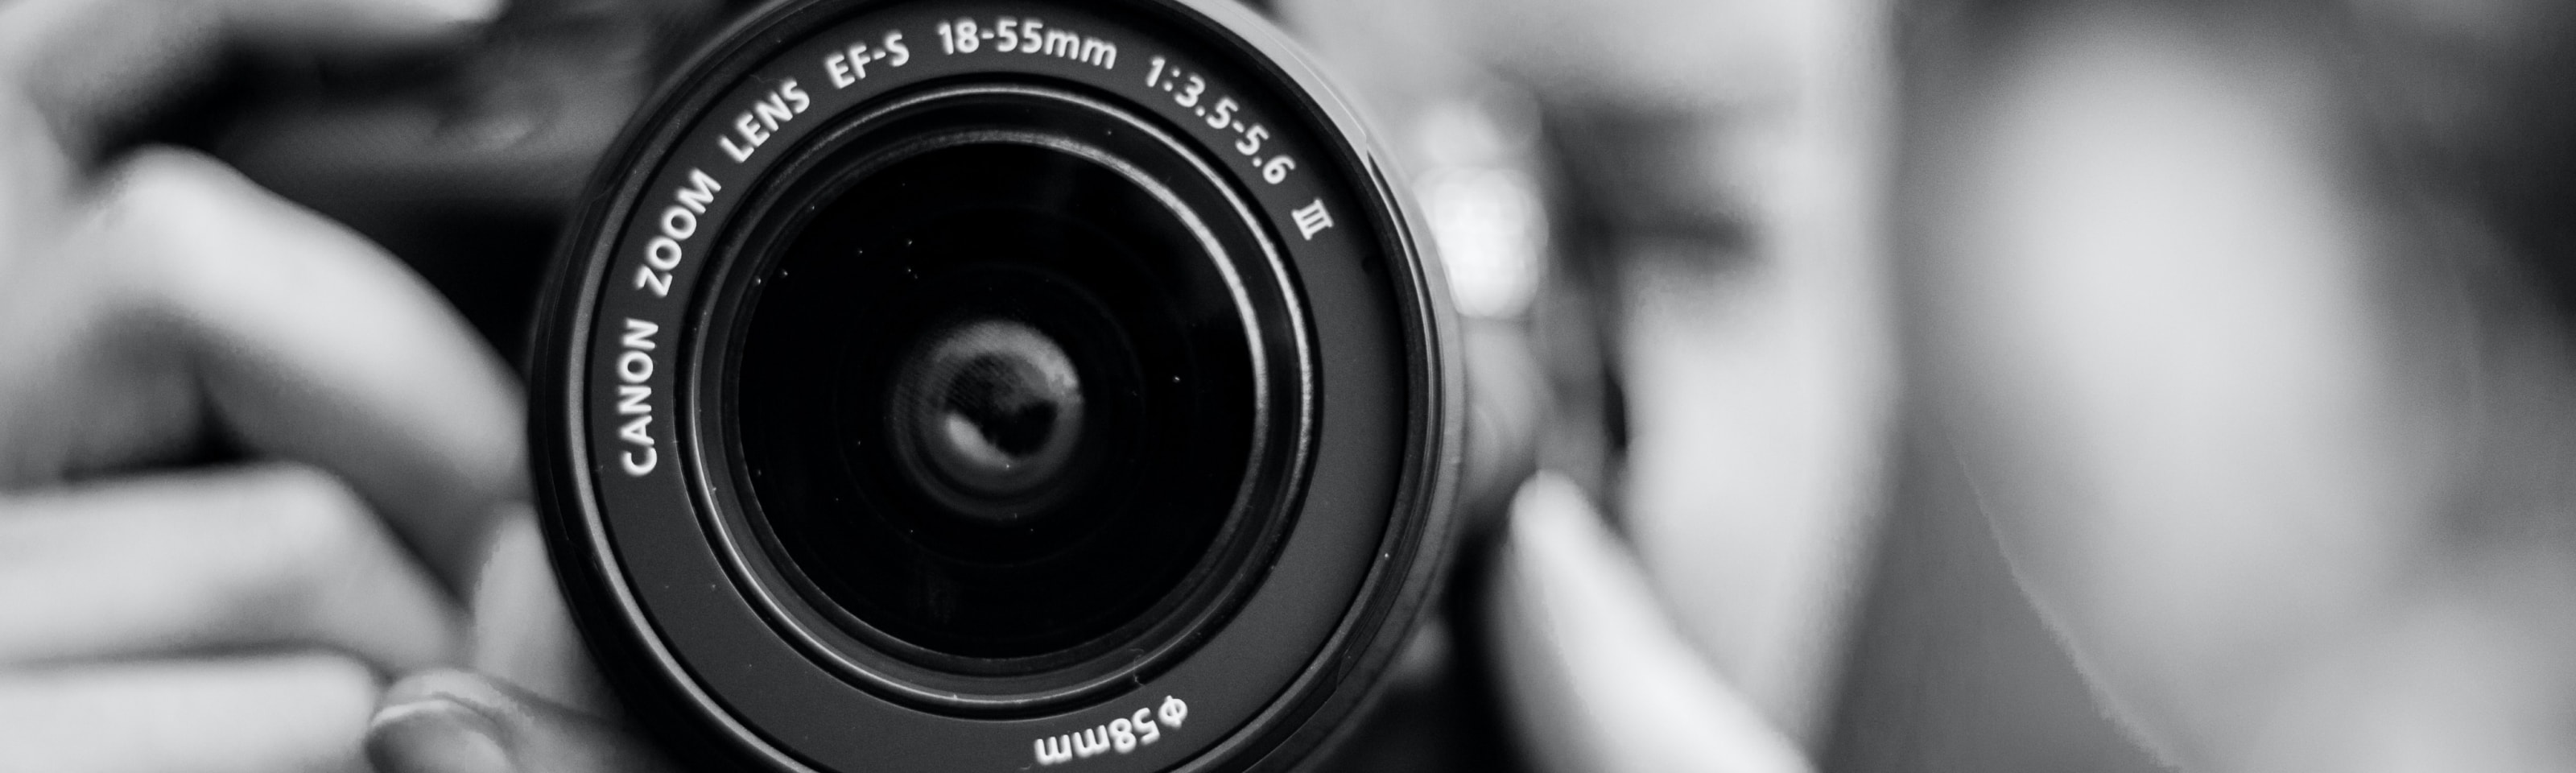 Foto en blanco y negro del lente de una cámara Canon